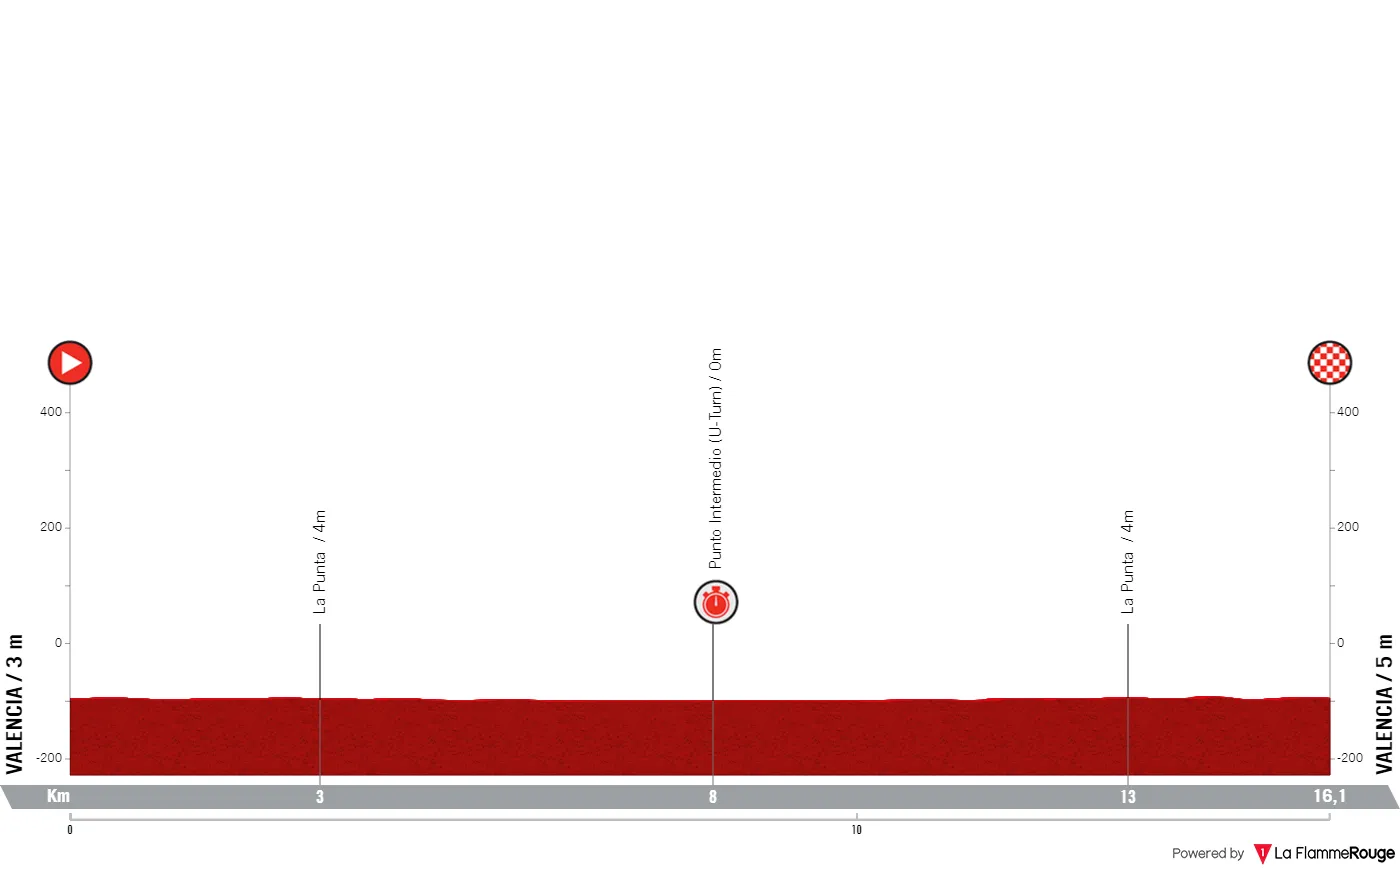 Etappe 1 (TTT): Valencia - Valencia, 16,1 Kilometer schematisches Profil&amp;amp;amp;lt;br&amp;amp;amp;gt;